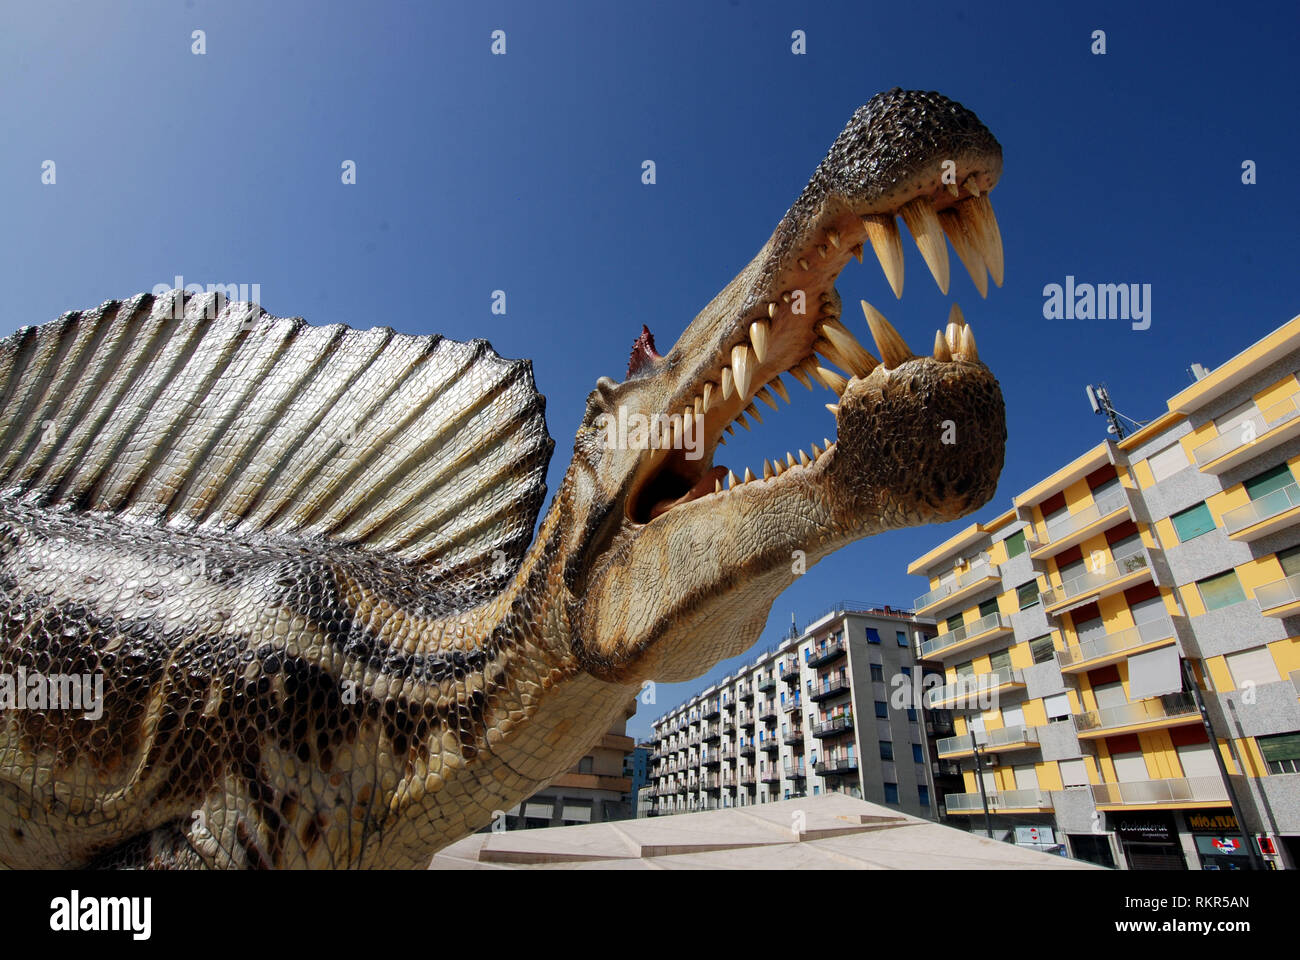 Les dinosaures marcher autour de la ville de reproduction à l'échelle 1:1 dinosaure spinosaurus aegyptiacus exposés dans la ville de Cosenza Calabria Italie 2018 Banque D'Images